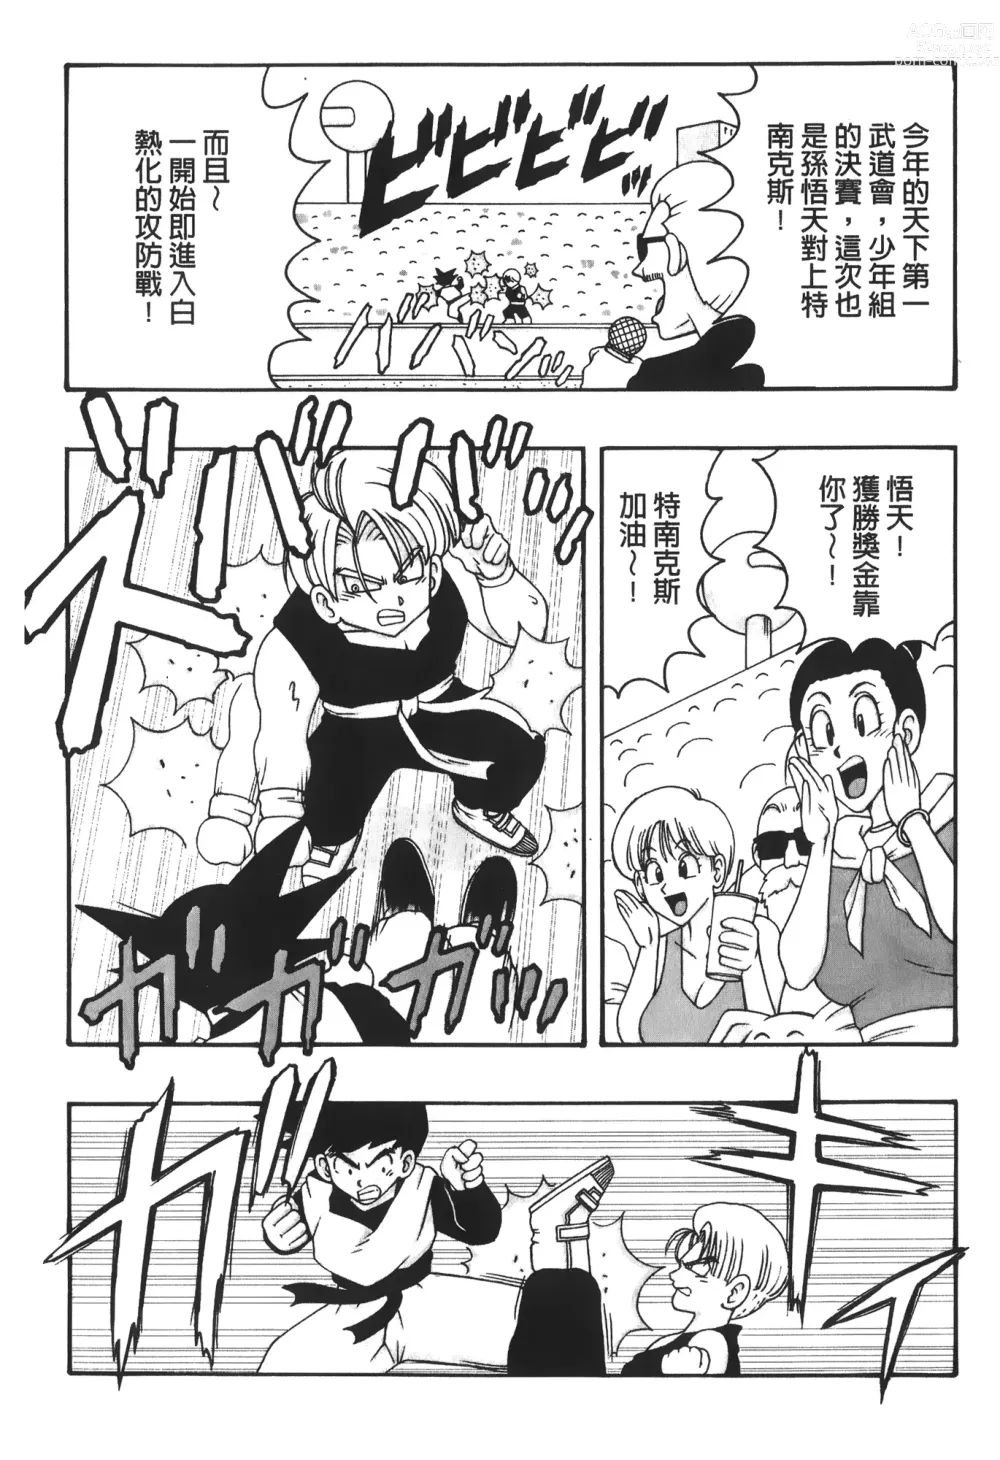 Page 3 of doujinshi ドラゴンパール 03